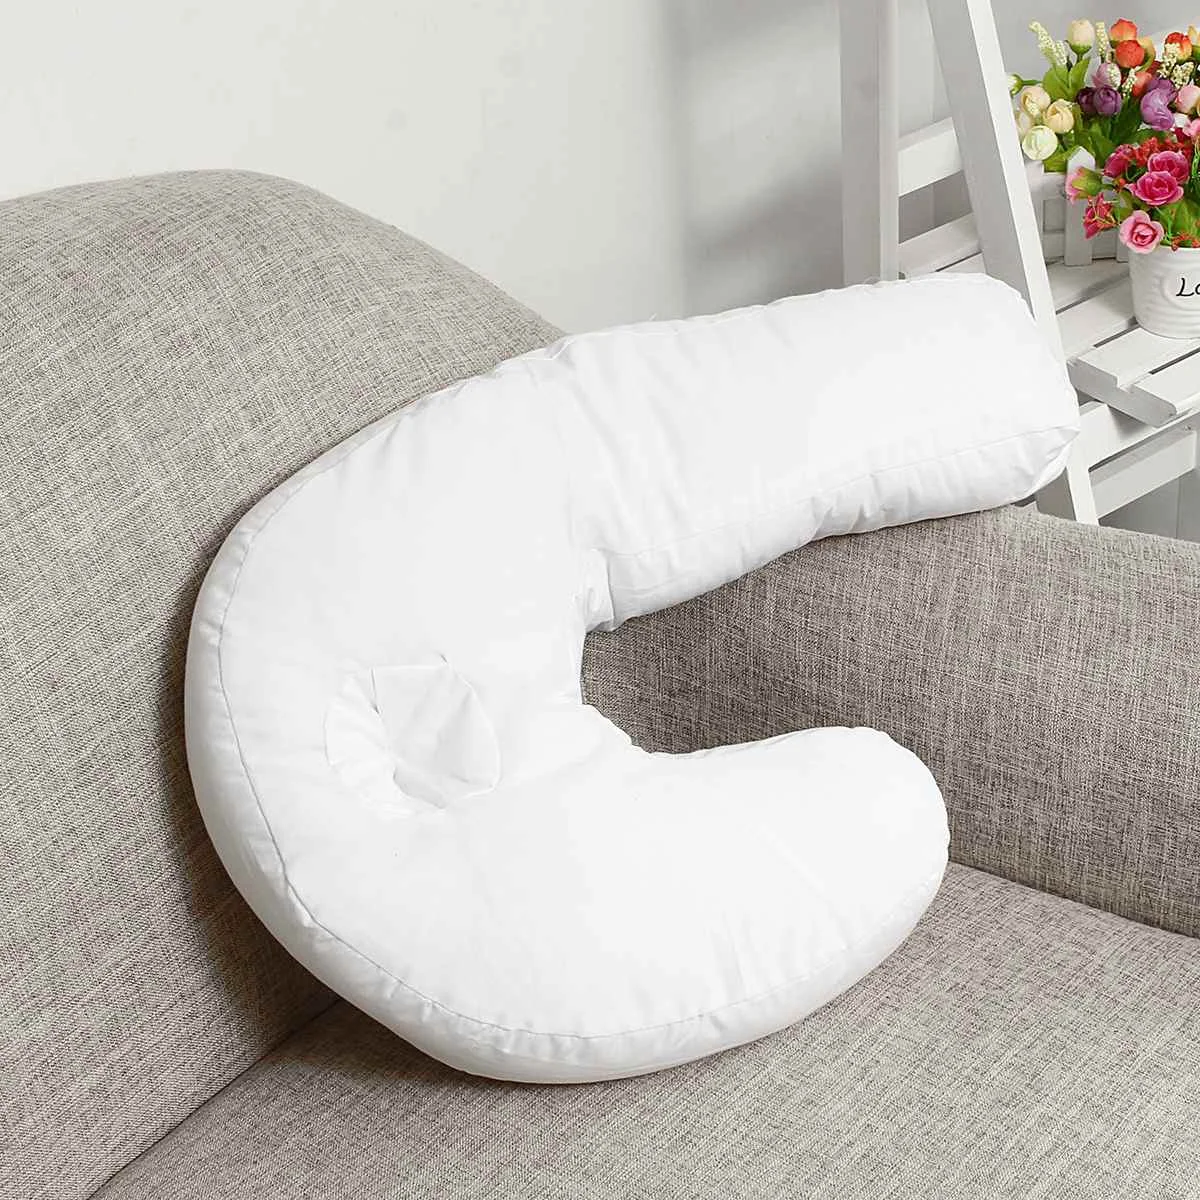 U-образная подушка для здоровья, подушка для сна, подушка для шеи и спины с эффектом памяти, подушка для путешествий, хлопковая подушка для защиты шеи